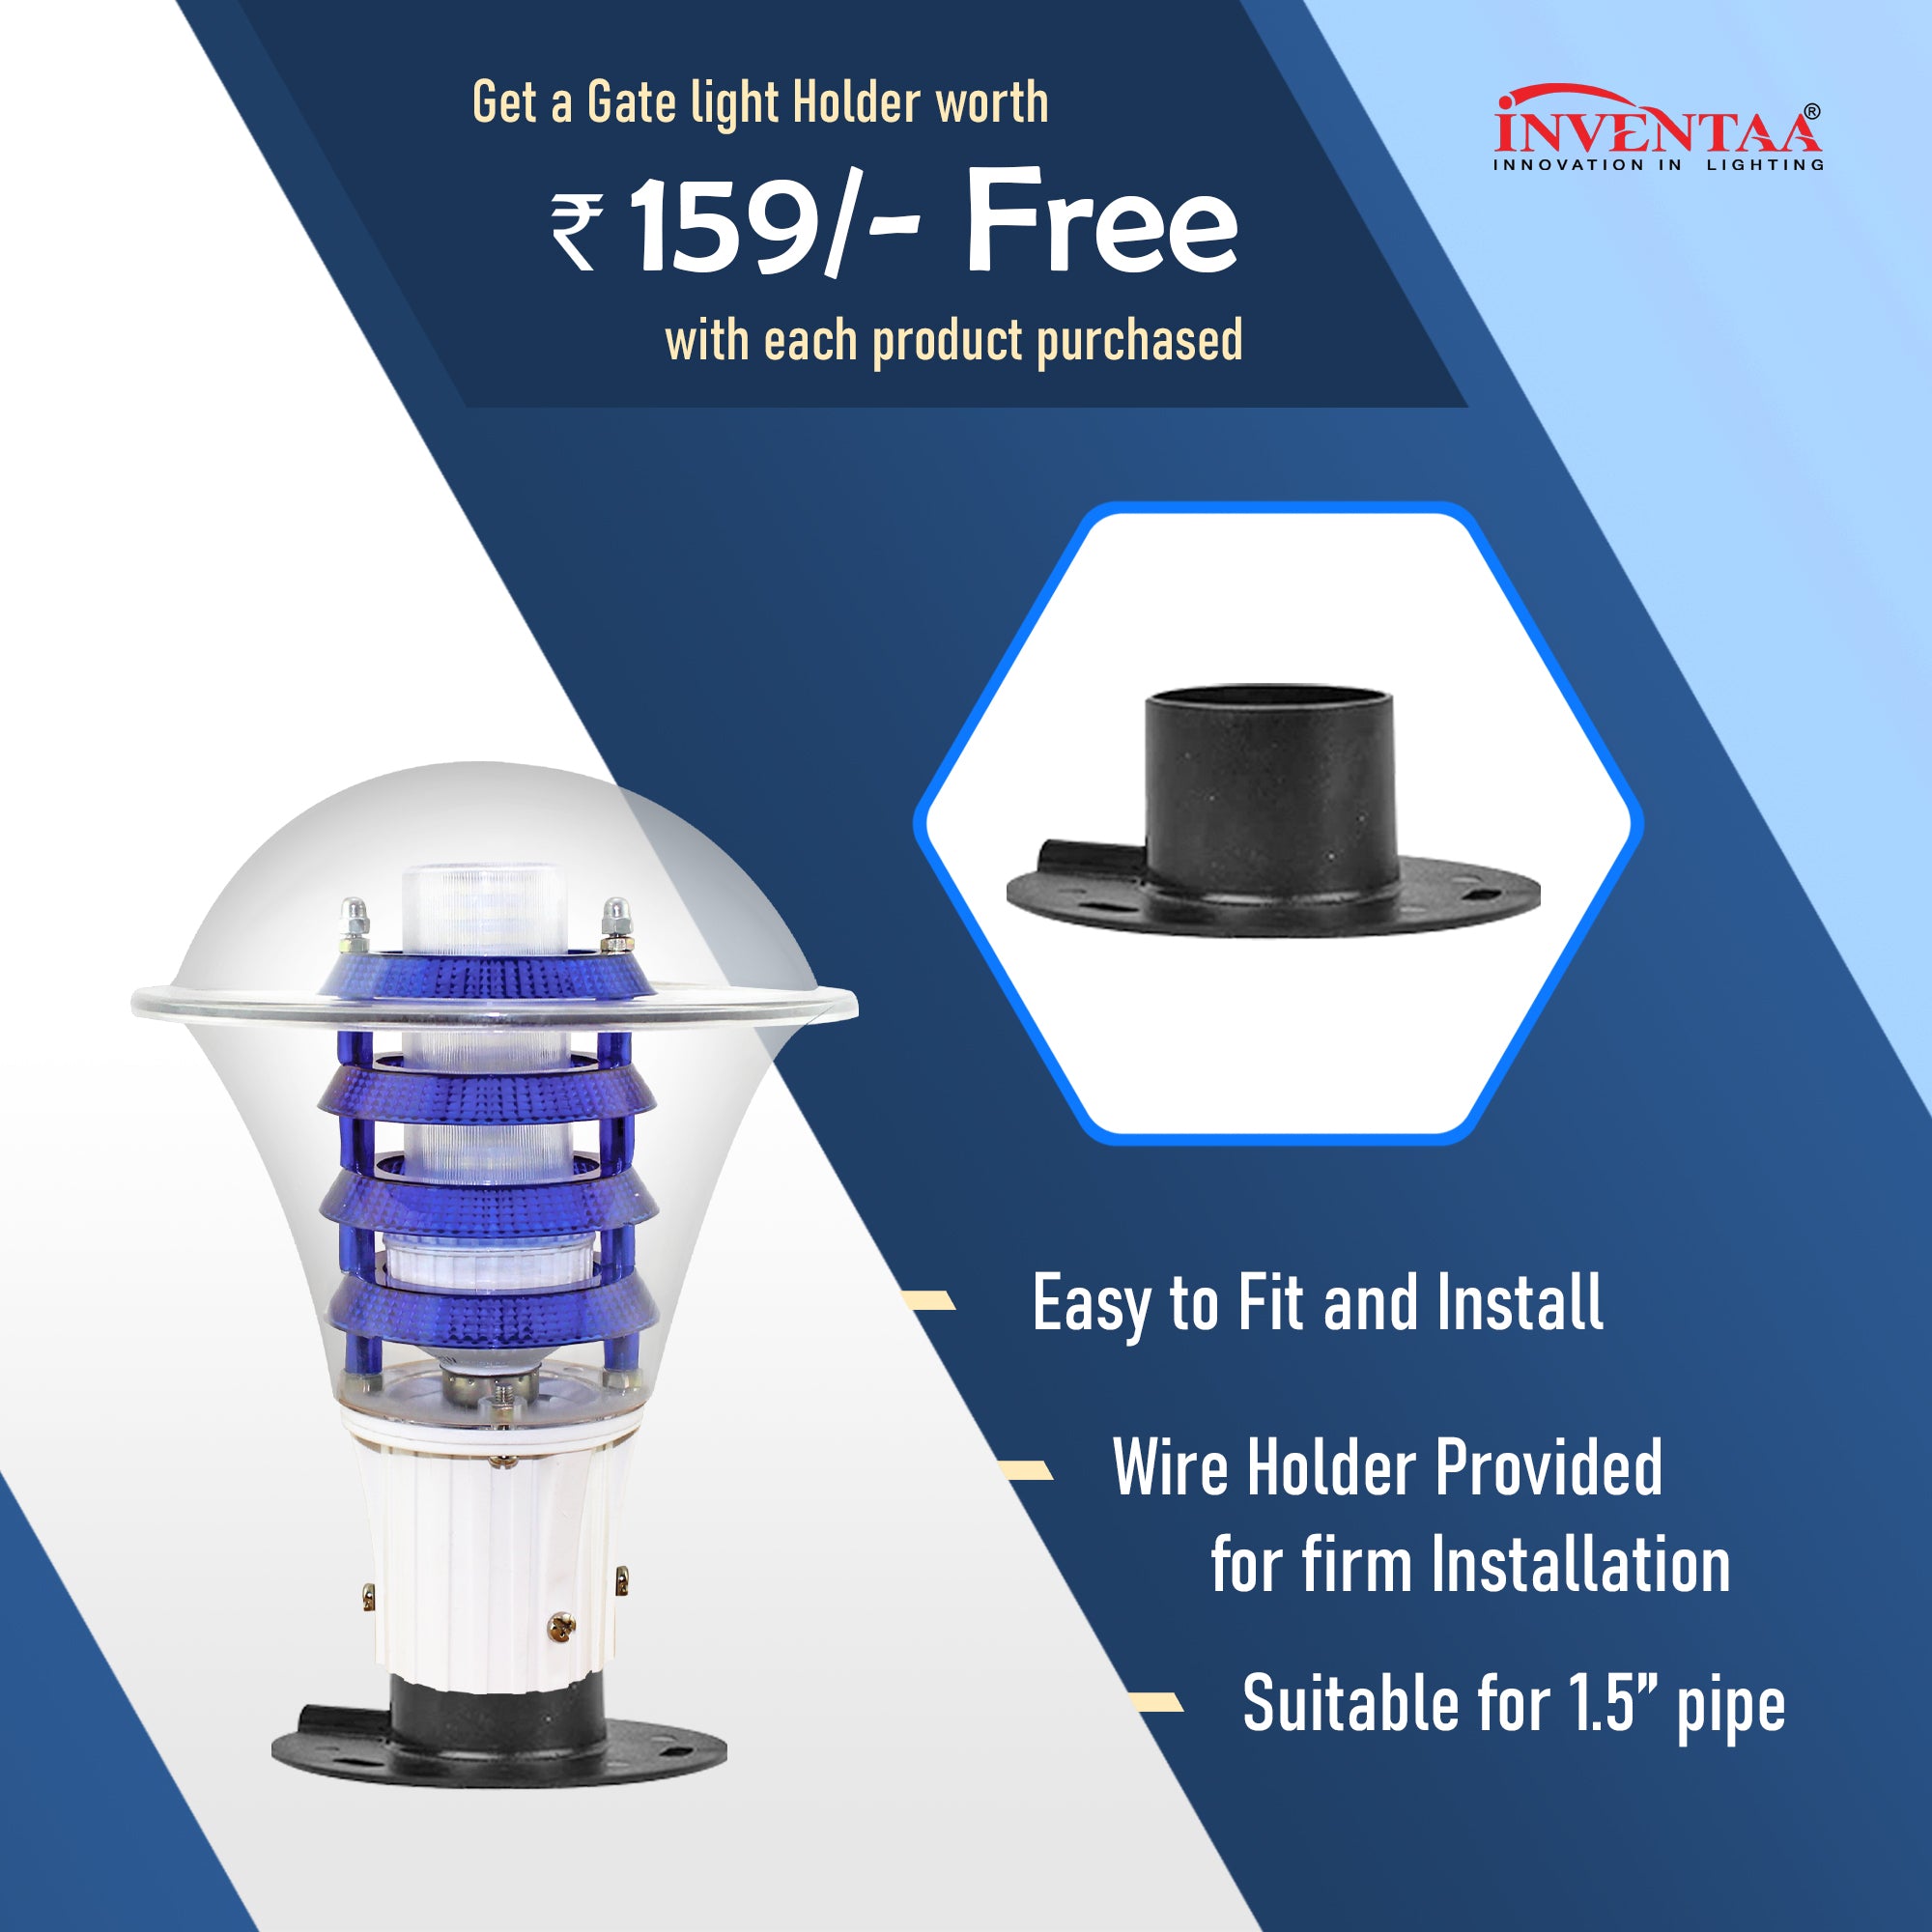 Free LED Gate Light Holder For Viva PC LED Gate Light | Best LED Gate Light Model Online at affordable price Online #bulb options_cool